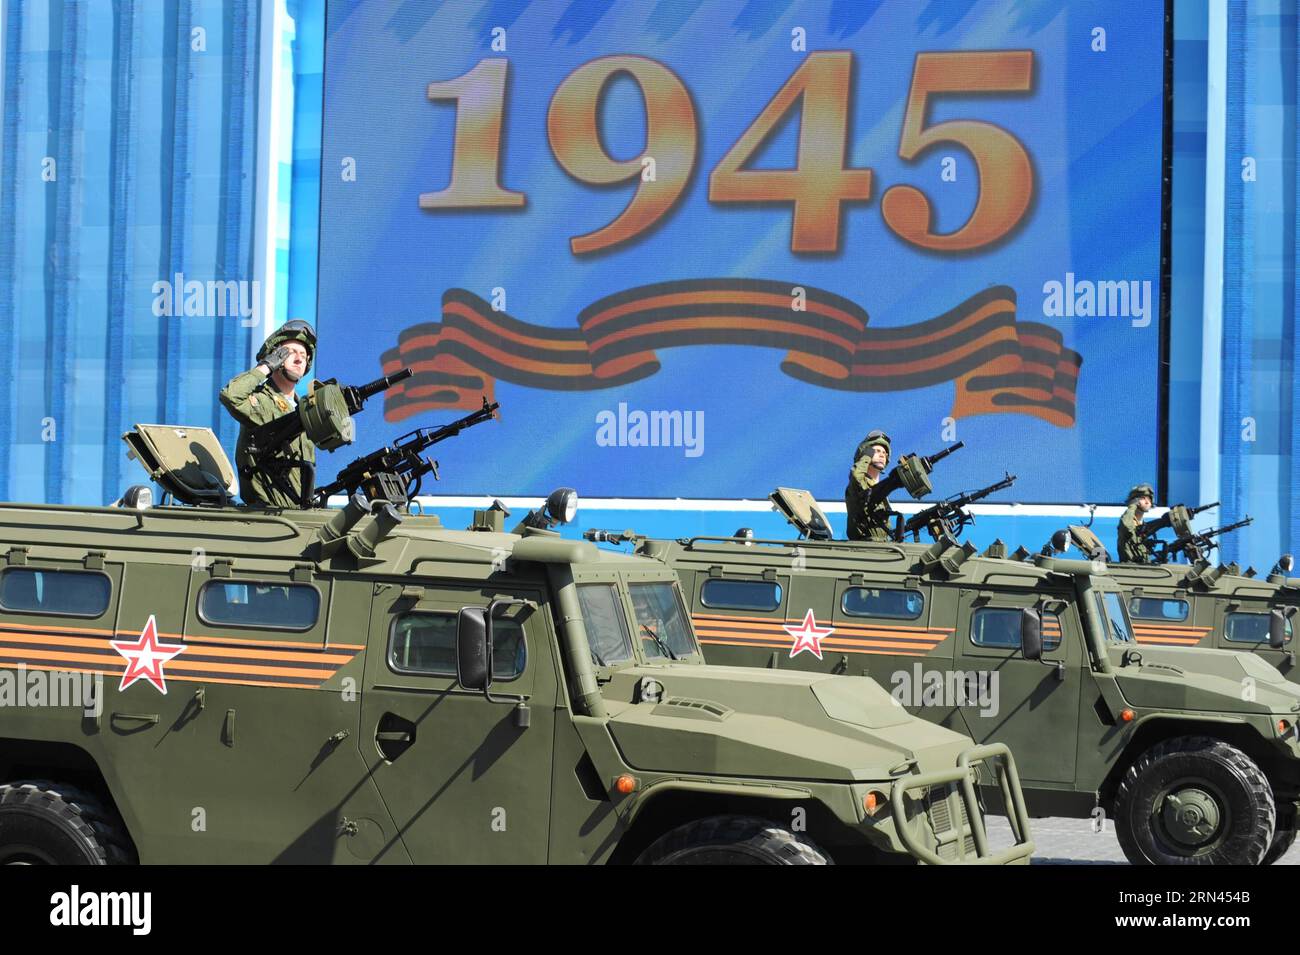 (150507) -- MOSKAU, Mai. 7, 2015 – Ein Mobilitätsfahrzeug der GAZ Tiger Infanterie wird am 7. Mai 2015 auf dem Roten Platz in Moskau während der letzten Probe für die Militärparade am Siegtag gesehen. Russland feiert den 70. Jahrestag des Sieges von 1945 über Nazi-Deutschland am 9. Mai. RUSSLAND-MOSKAU-WWII JAHRESPARADE-PROBE DaixTianfang PUBLICATIONxNOTxINxCHN Moskau 7. Mai 2015 ein Gaz Tiger Infantry Mobilitätsfahrzeug IST Seen auf dem Moskauer Roten Platz AM 7. Mai 2015 während der letzten Probe für den Siegtag der Militärparade feiert Russland den 70. JAHRESTAG des Sieges 1945 über Na Stockfoto